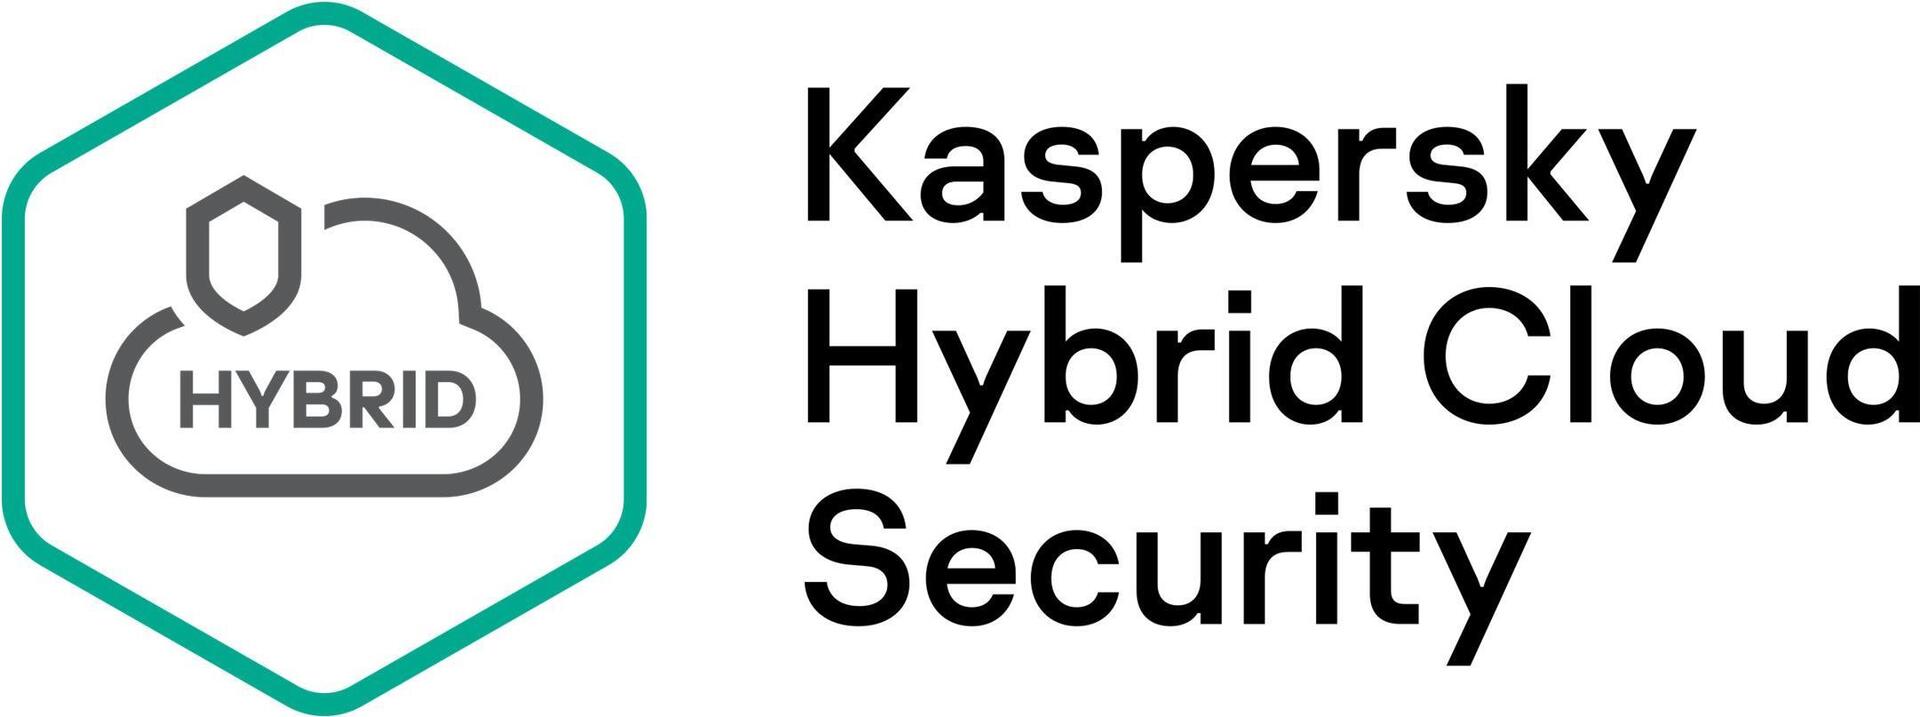 Kaspersky Hybrid Cloud Security (KL4554XAPT9)